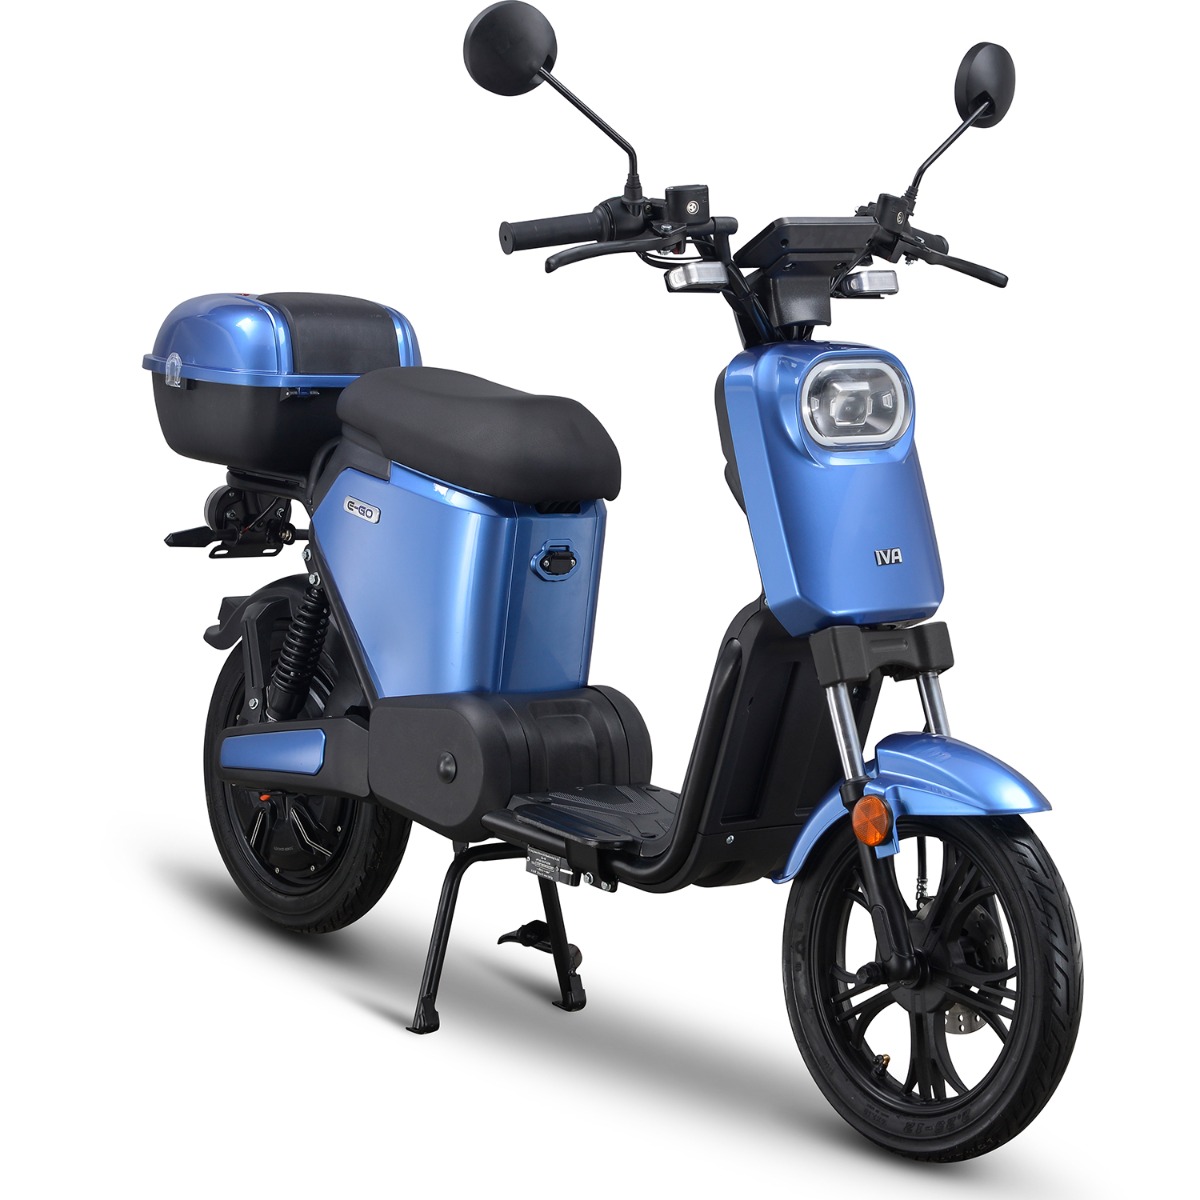 De iva e go s2 is een no nonsense e scooter () in een licht, eenvoudig design. een ideaal model om betaalbaar ...